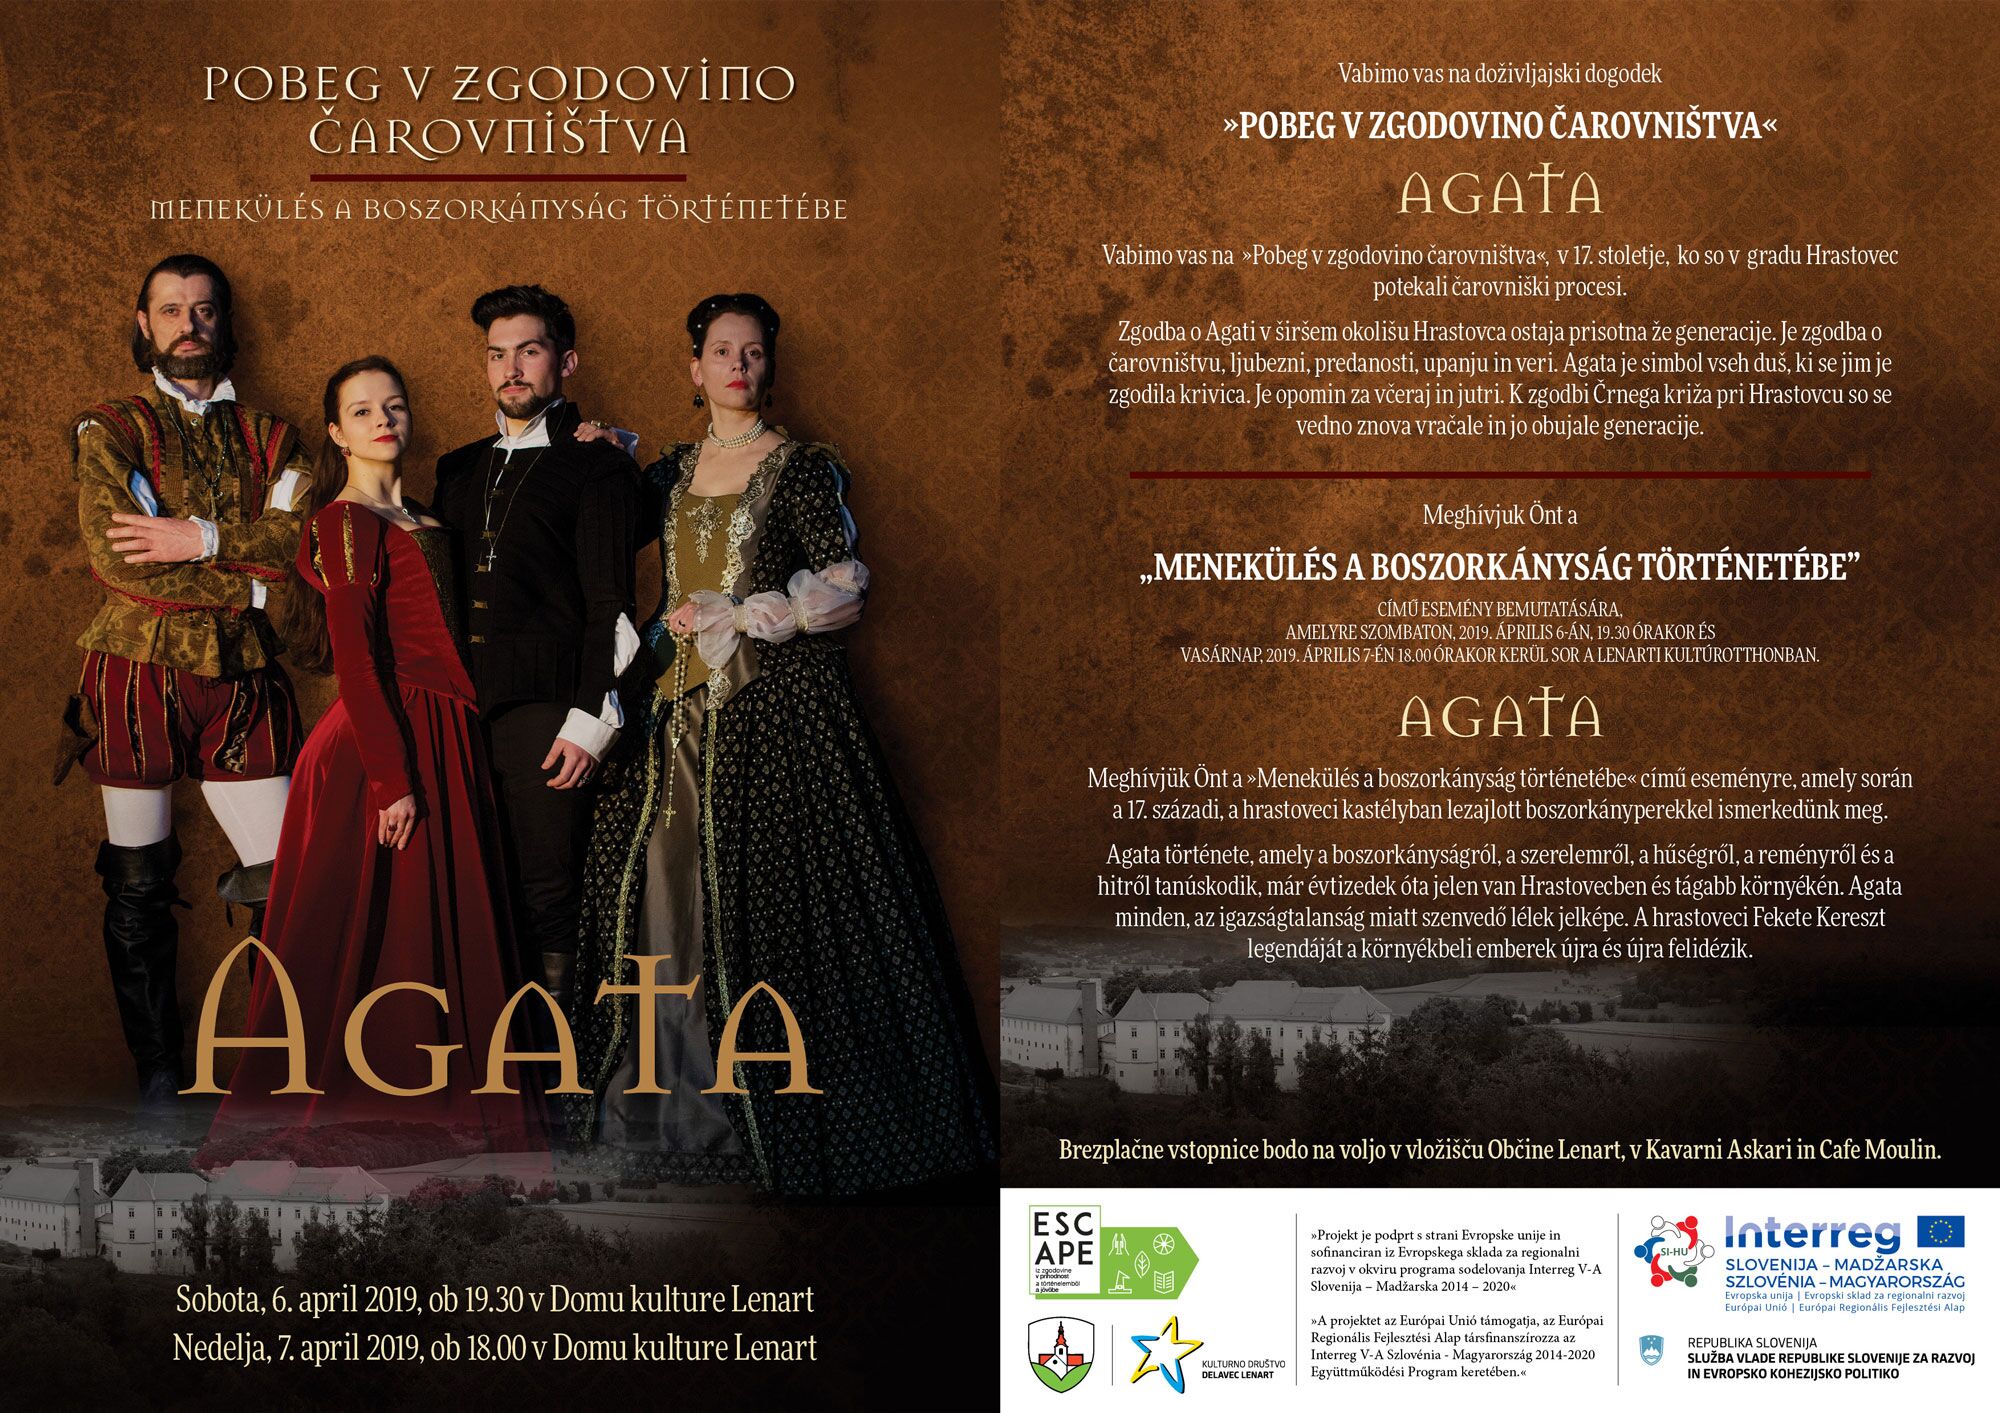 Predstava Agata je razprodana